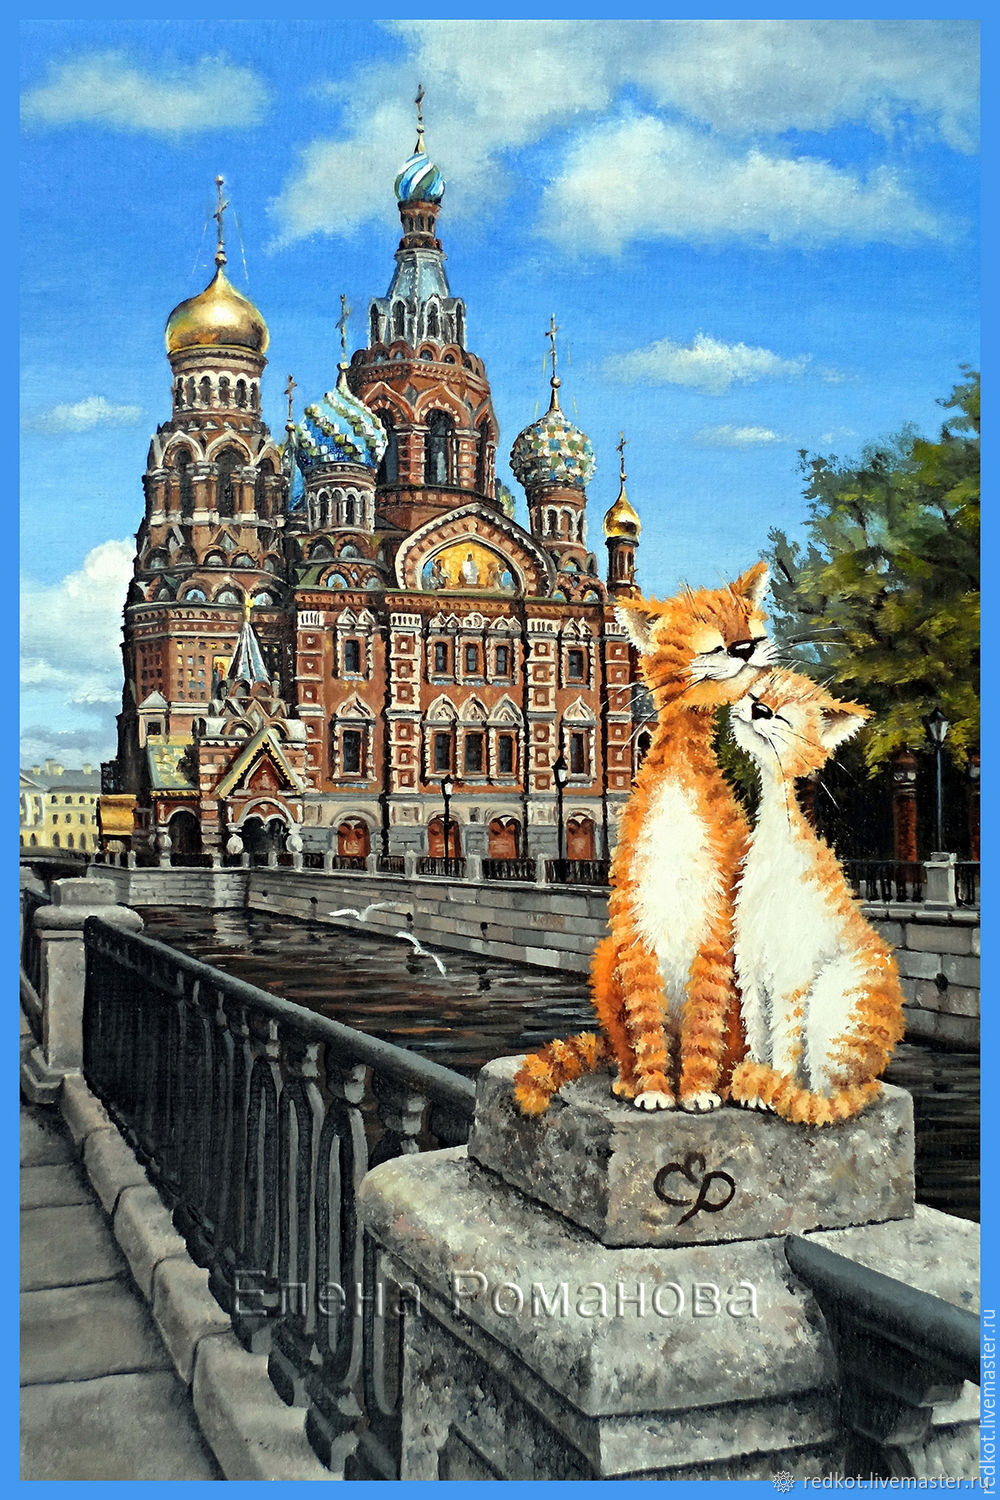 Петербургские коты Елены Романовой